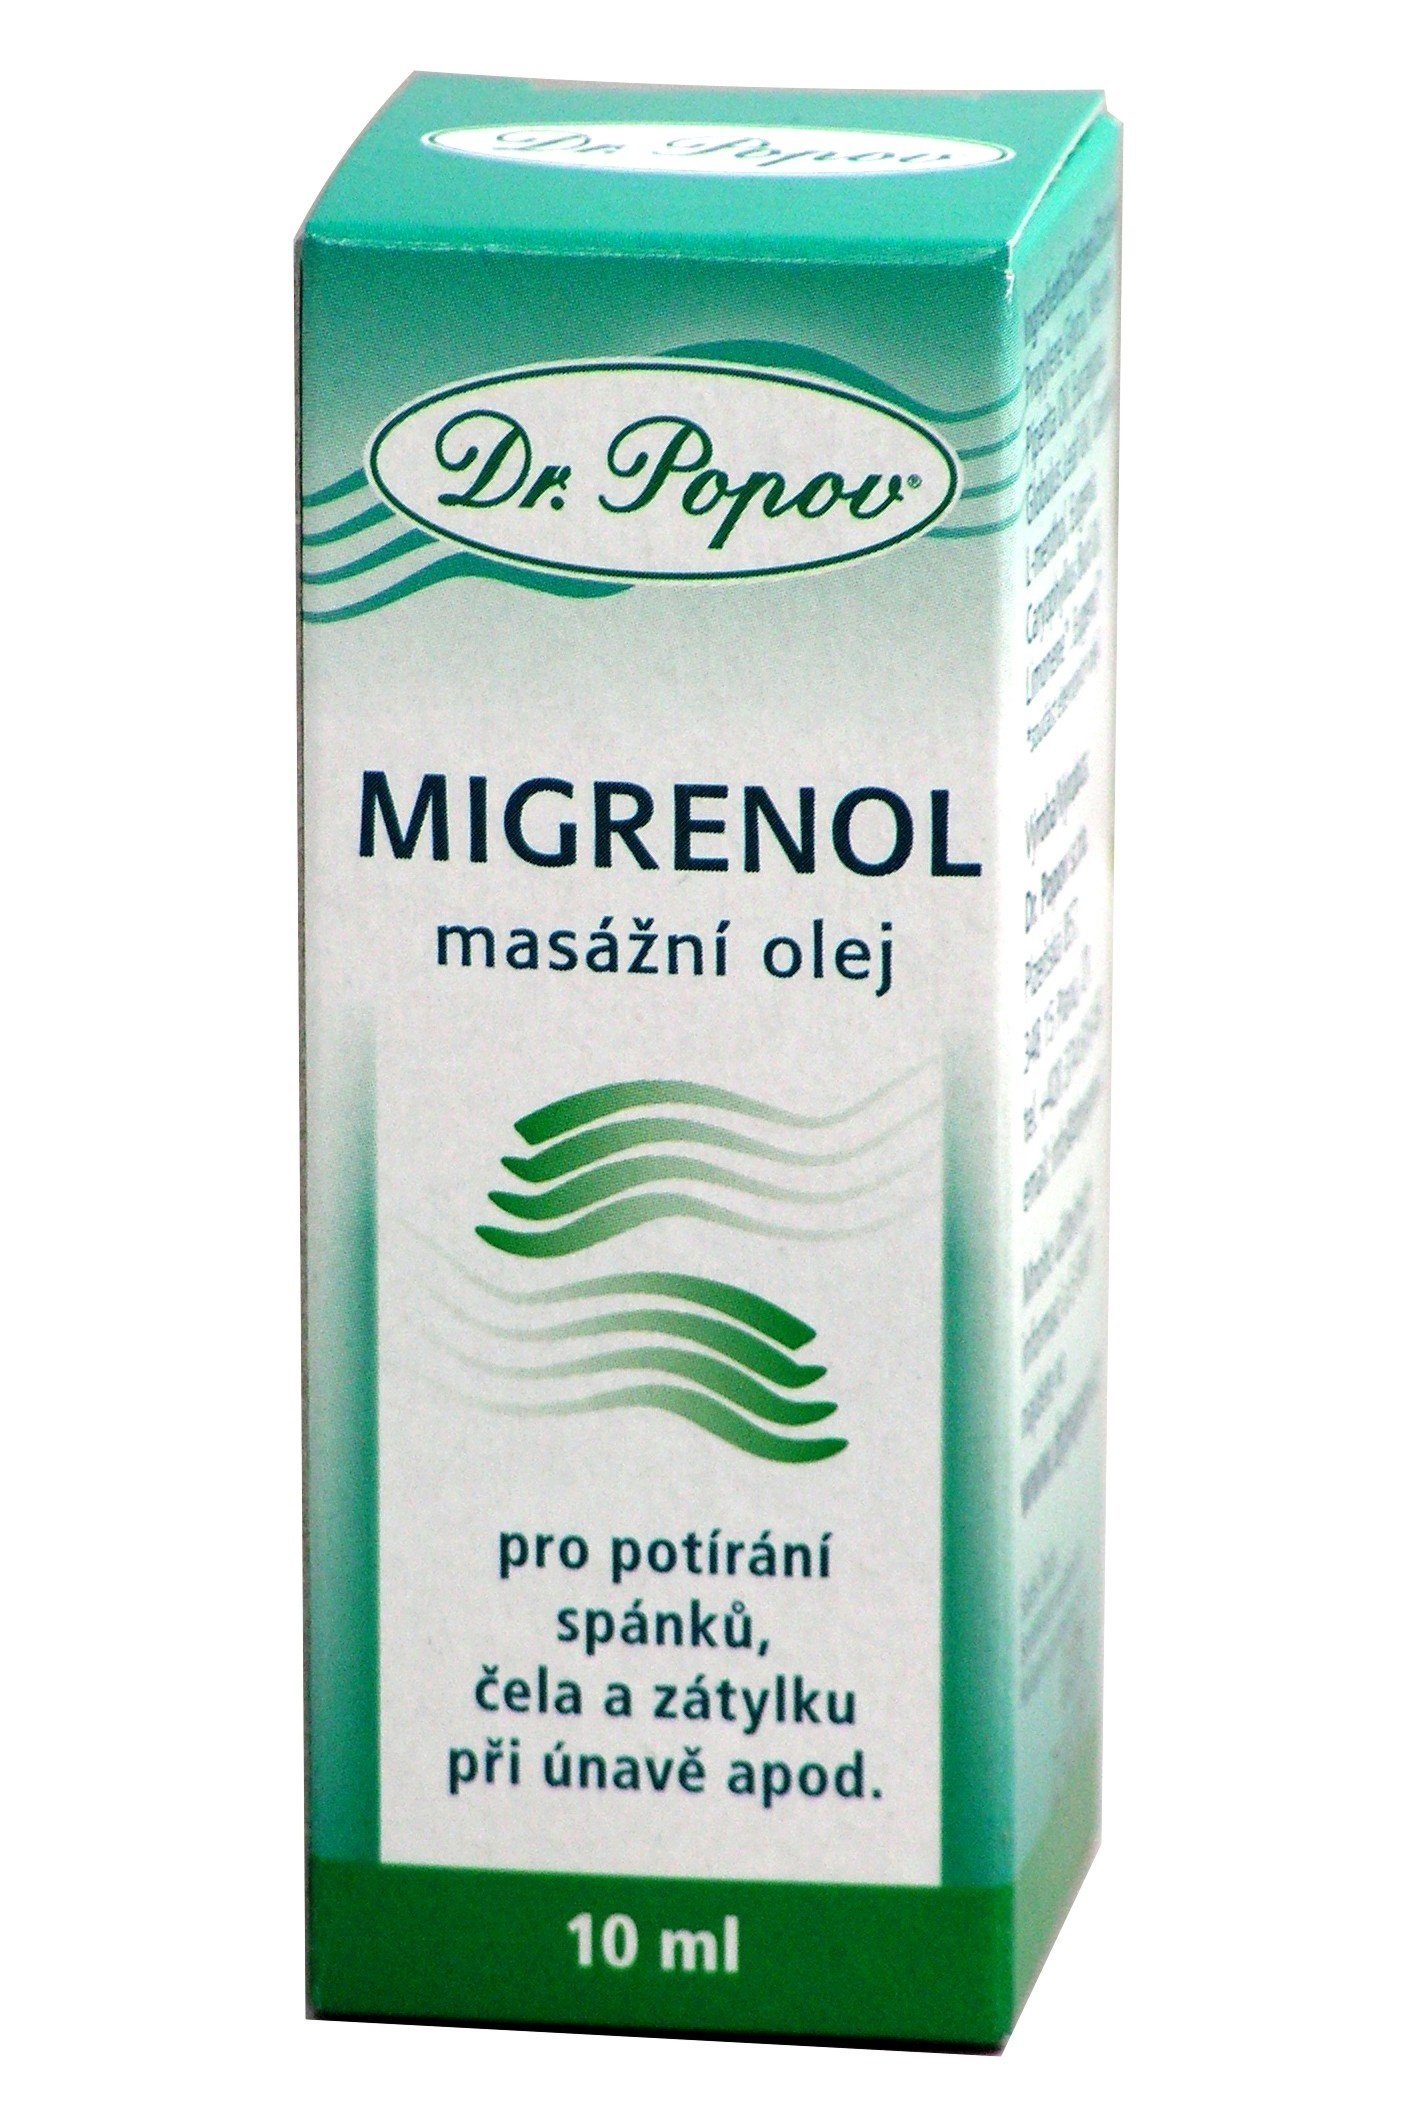 migrenol-masazni-olej-10ml